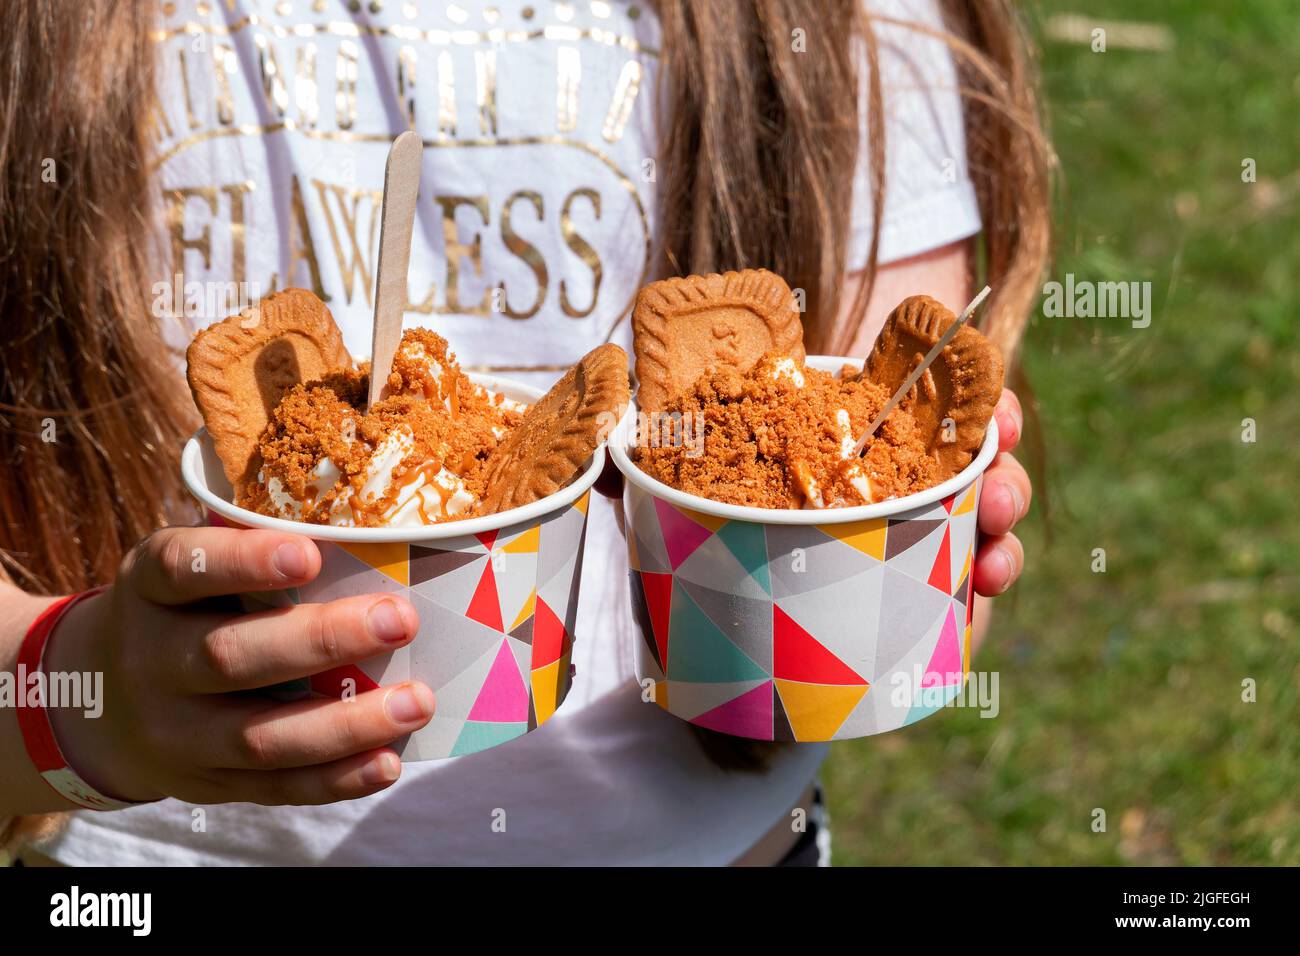 Une jeune fille détient deux portions de la glace Biscoff. La crème glacée est servie avec des biscuits Biscoff entiers et émietlés ainsi que de la pâte Biscoff. Banque D'Images